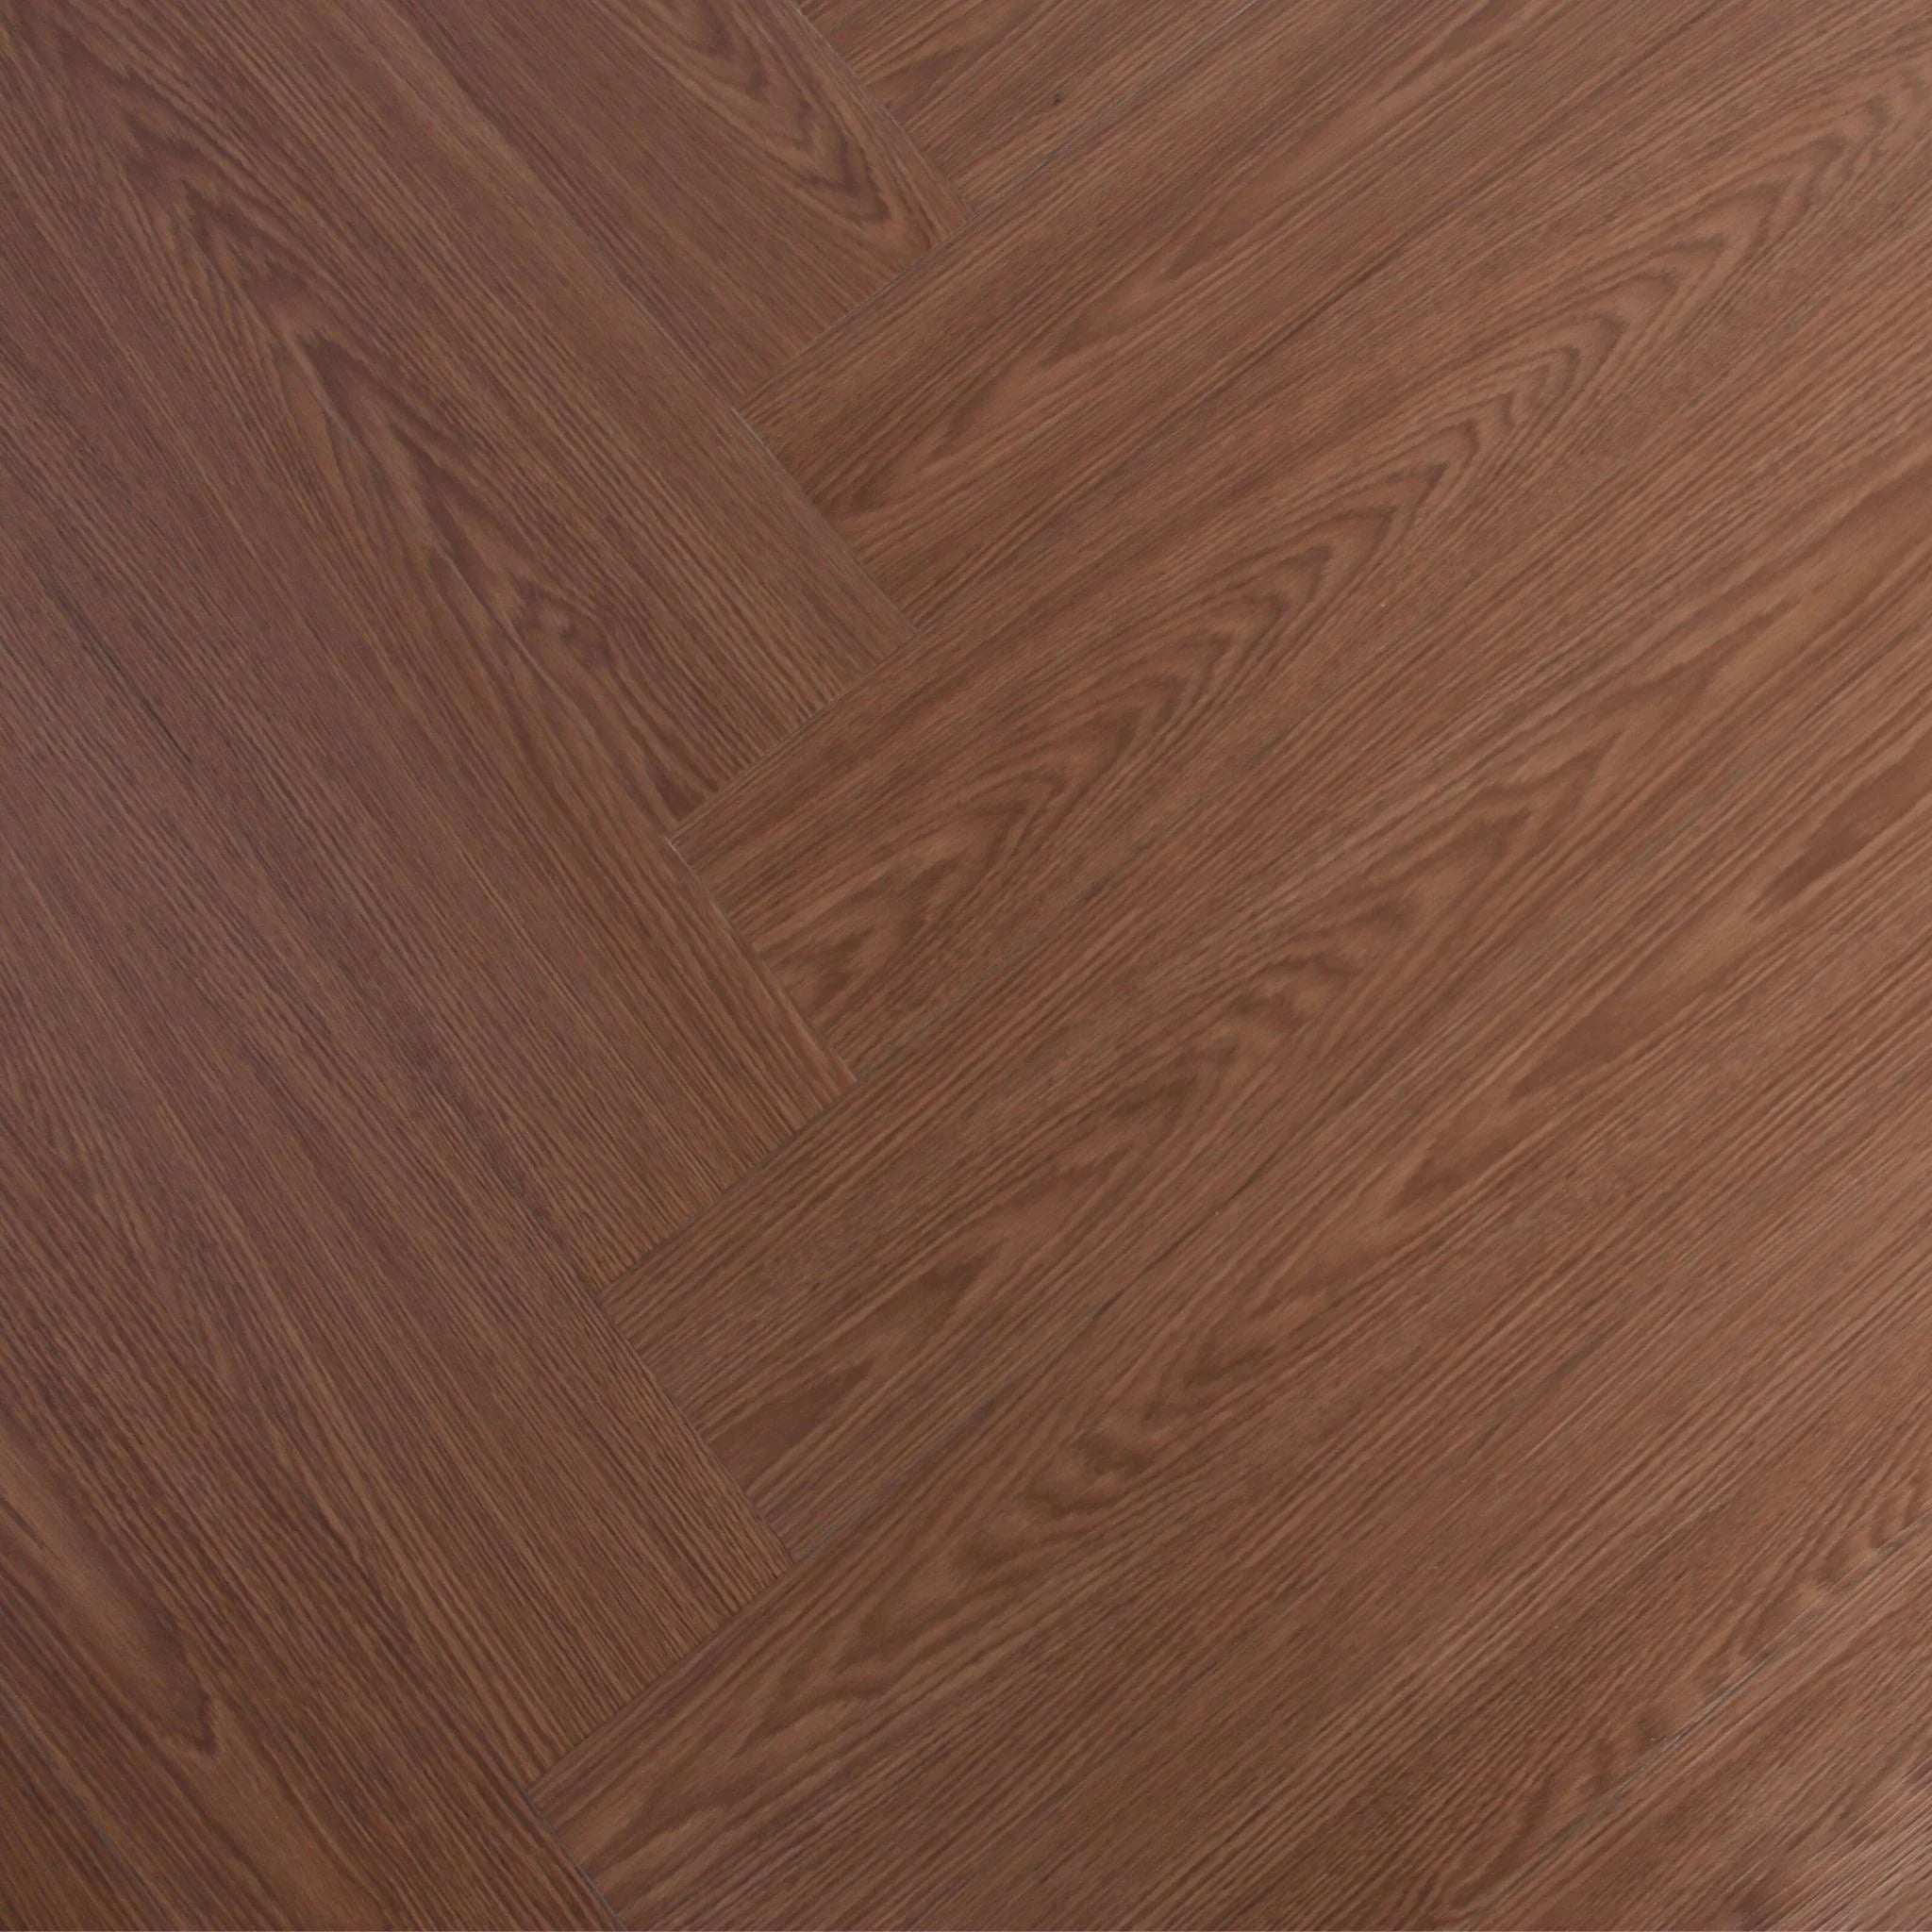 herringbone patterned wood effect vinyl flooring in a rich brown tone